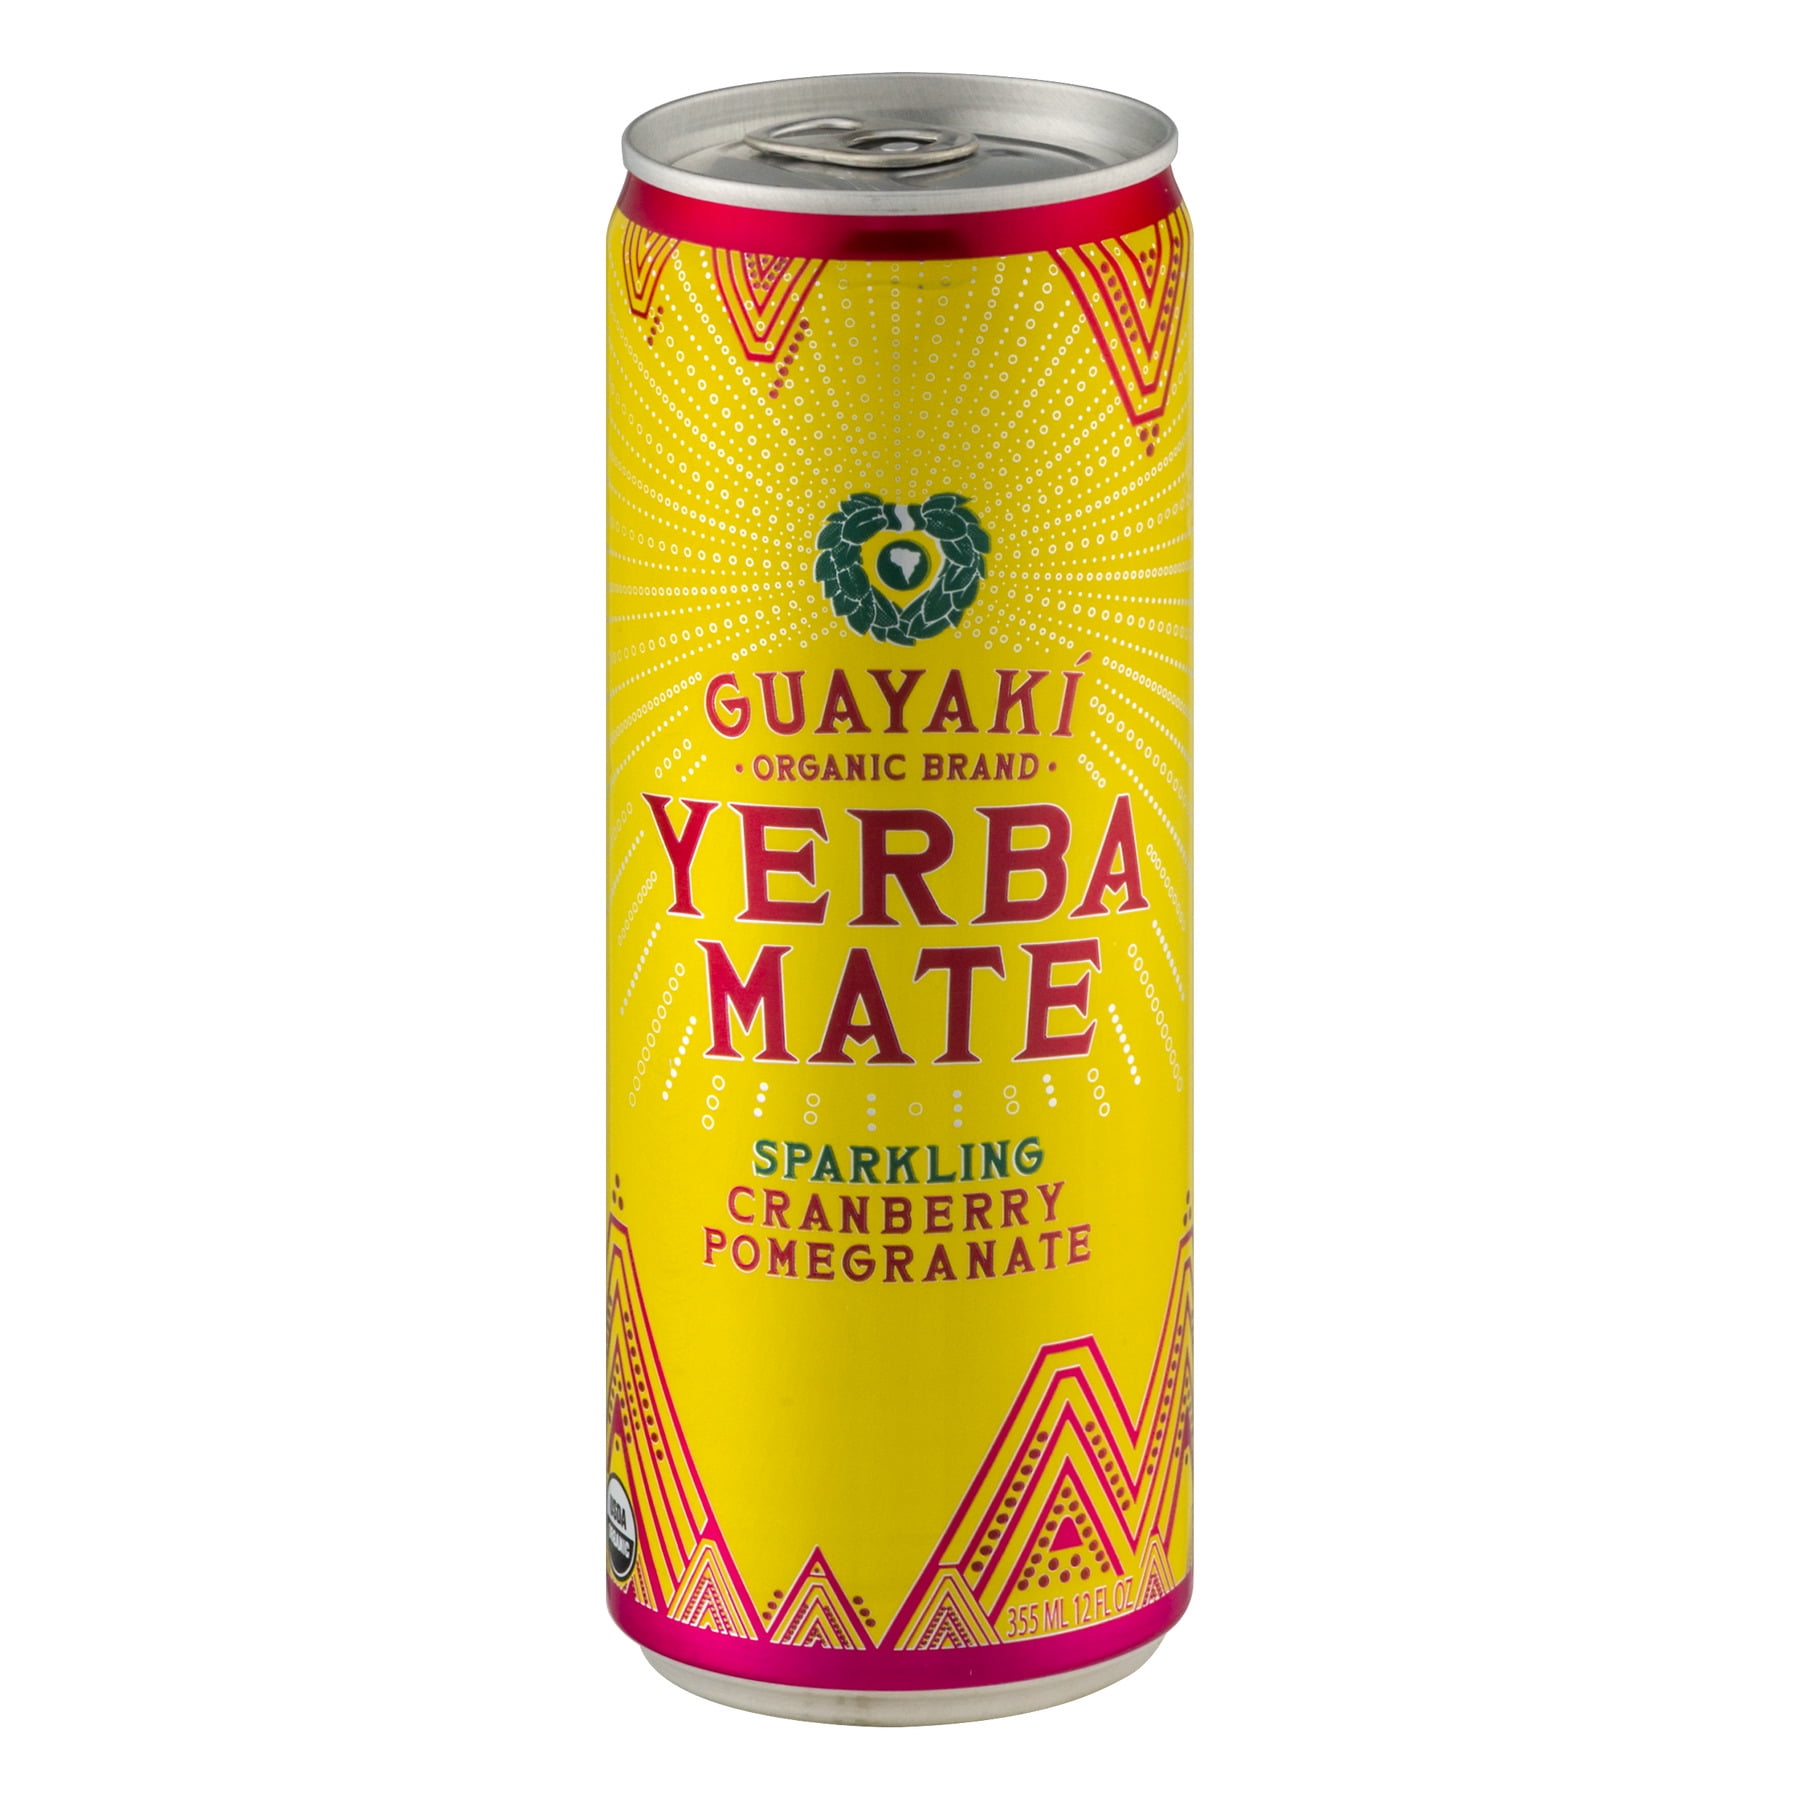 Yabai Grape - 4pk/12 fl oz Cans